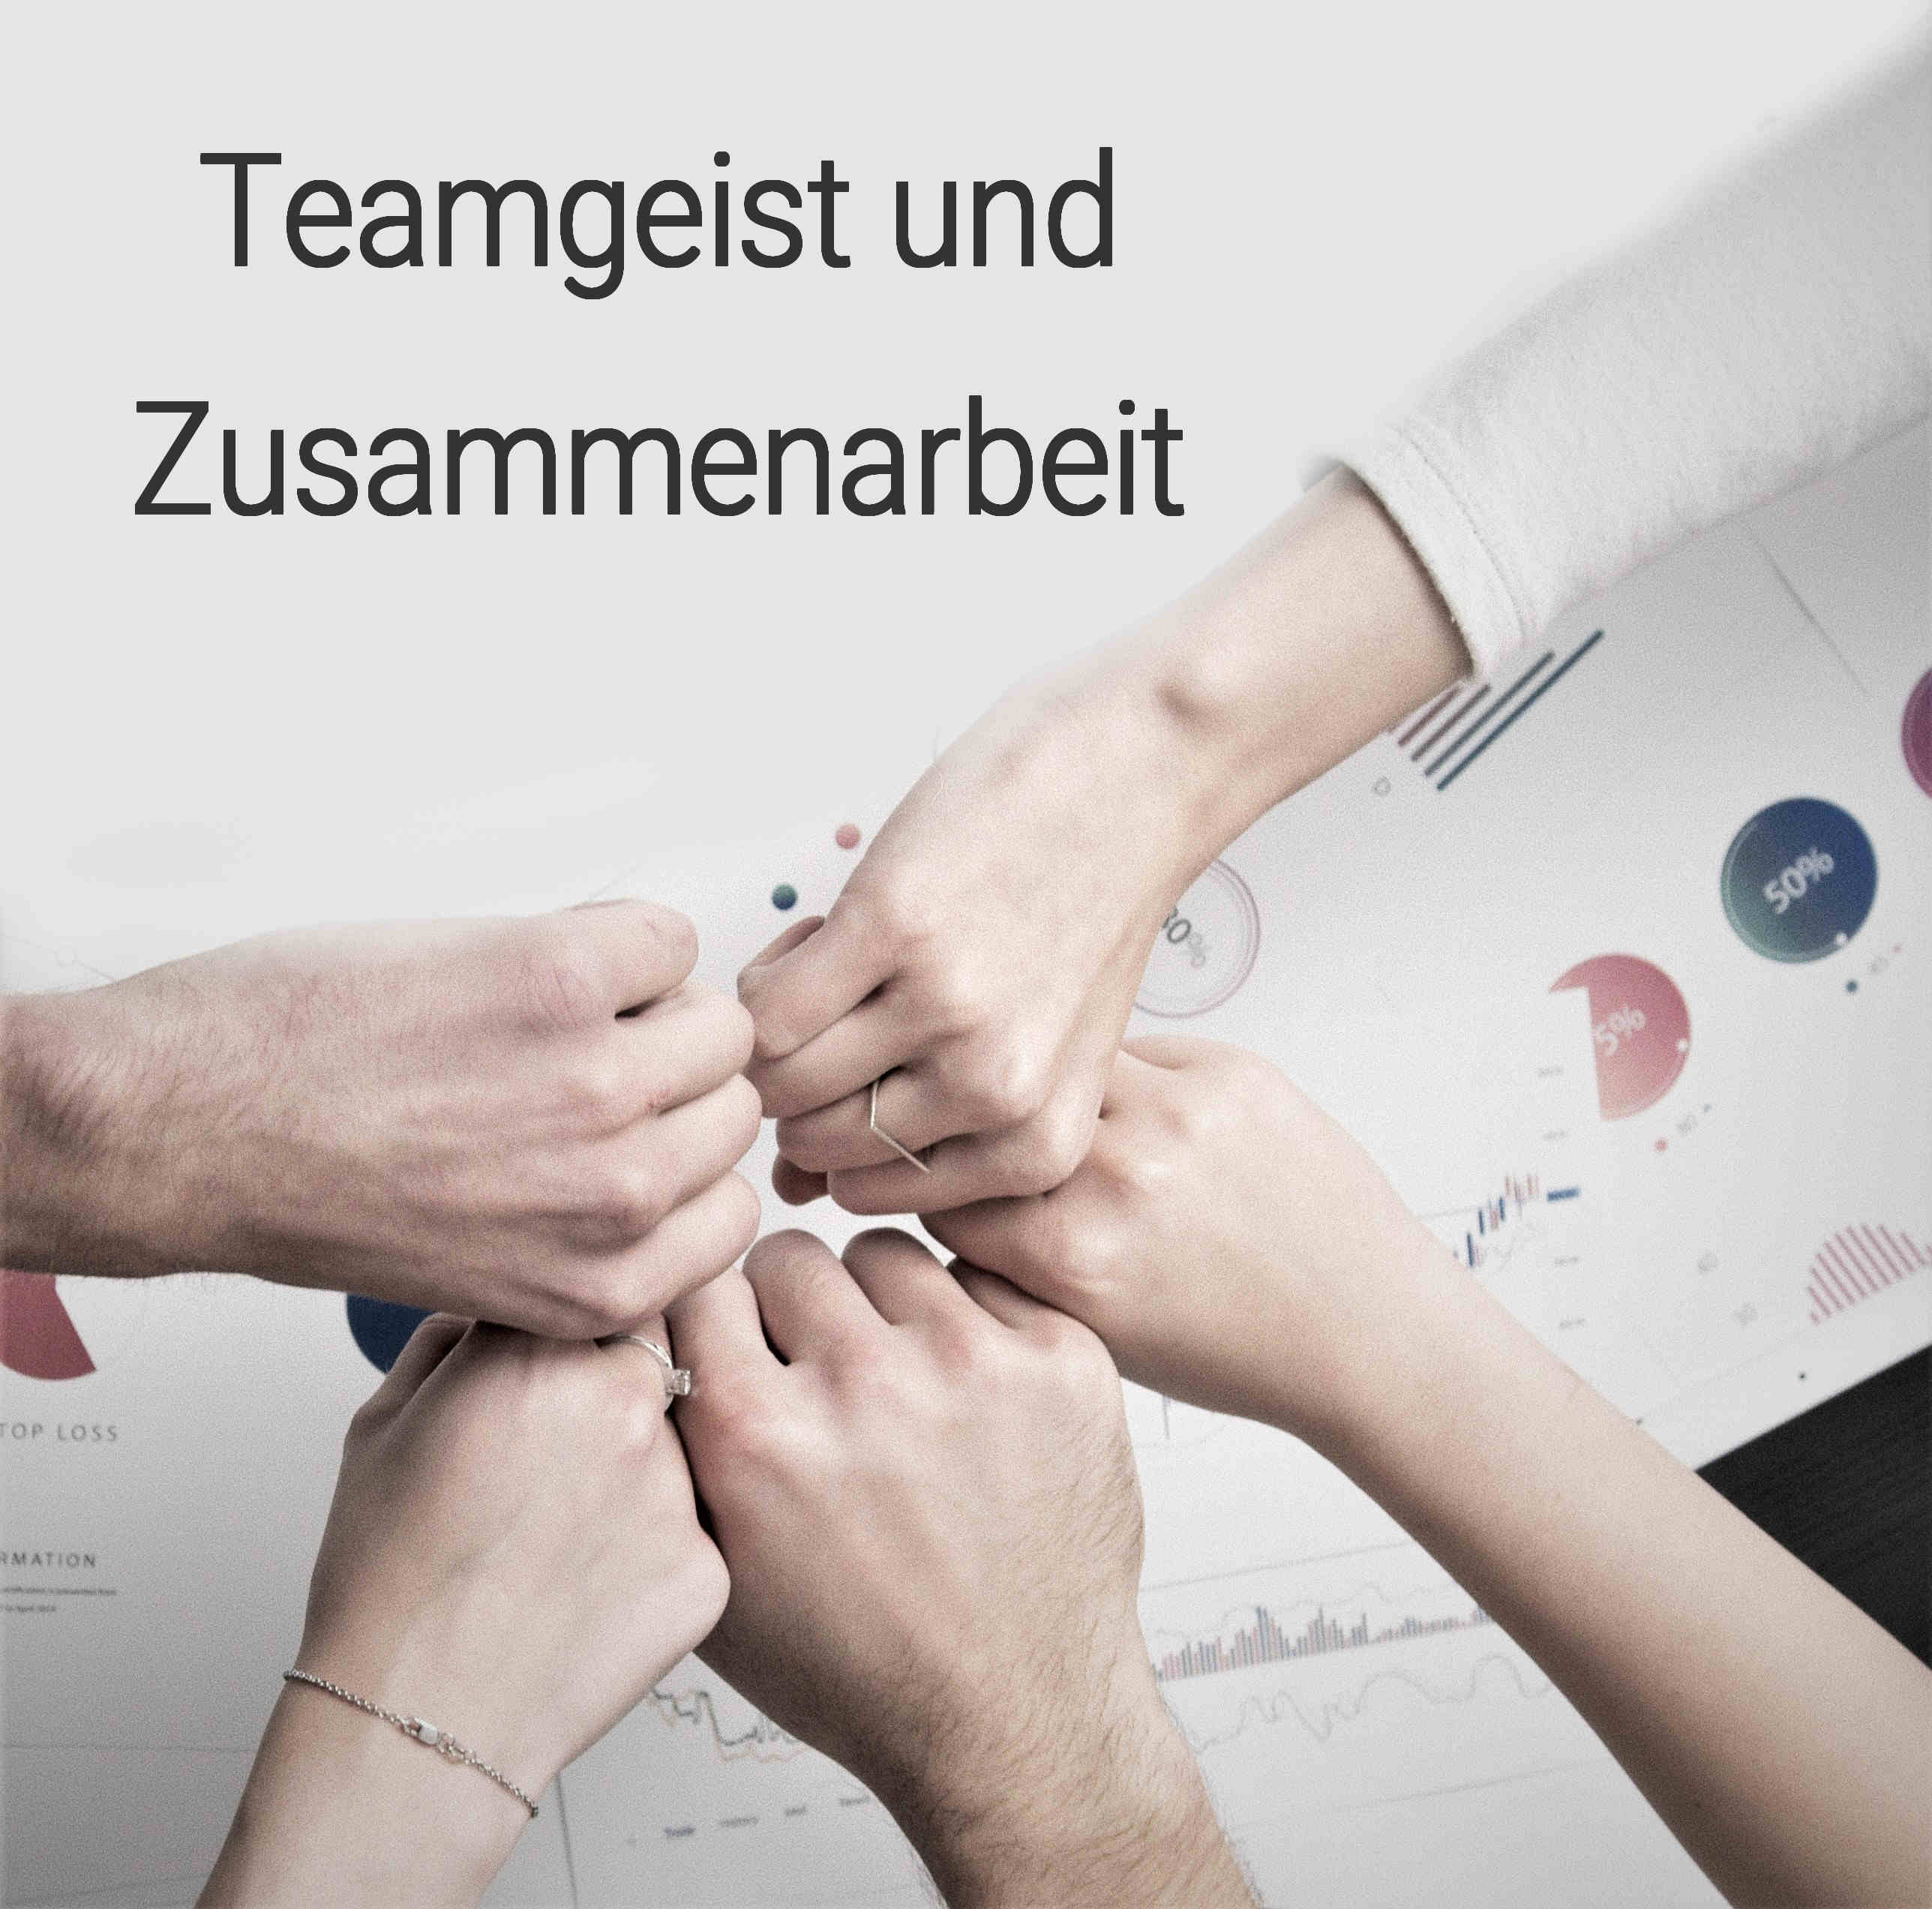 Teamgeist und Zusammenarbeit: Gemeinsam schaffen wir Großes und überwinden jede Herausforderung.  Dynamik der Teamarbeit: Die lebhafte Interaktion und Zusammenarbeit im Team bringt uns voran.